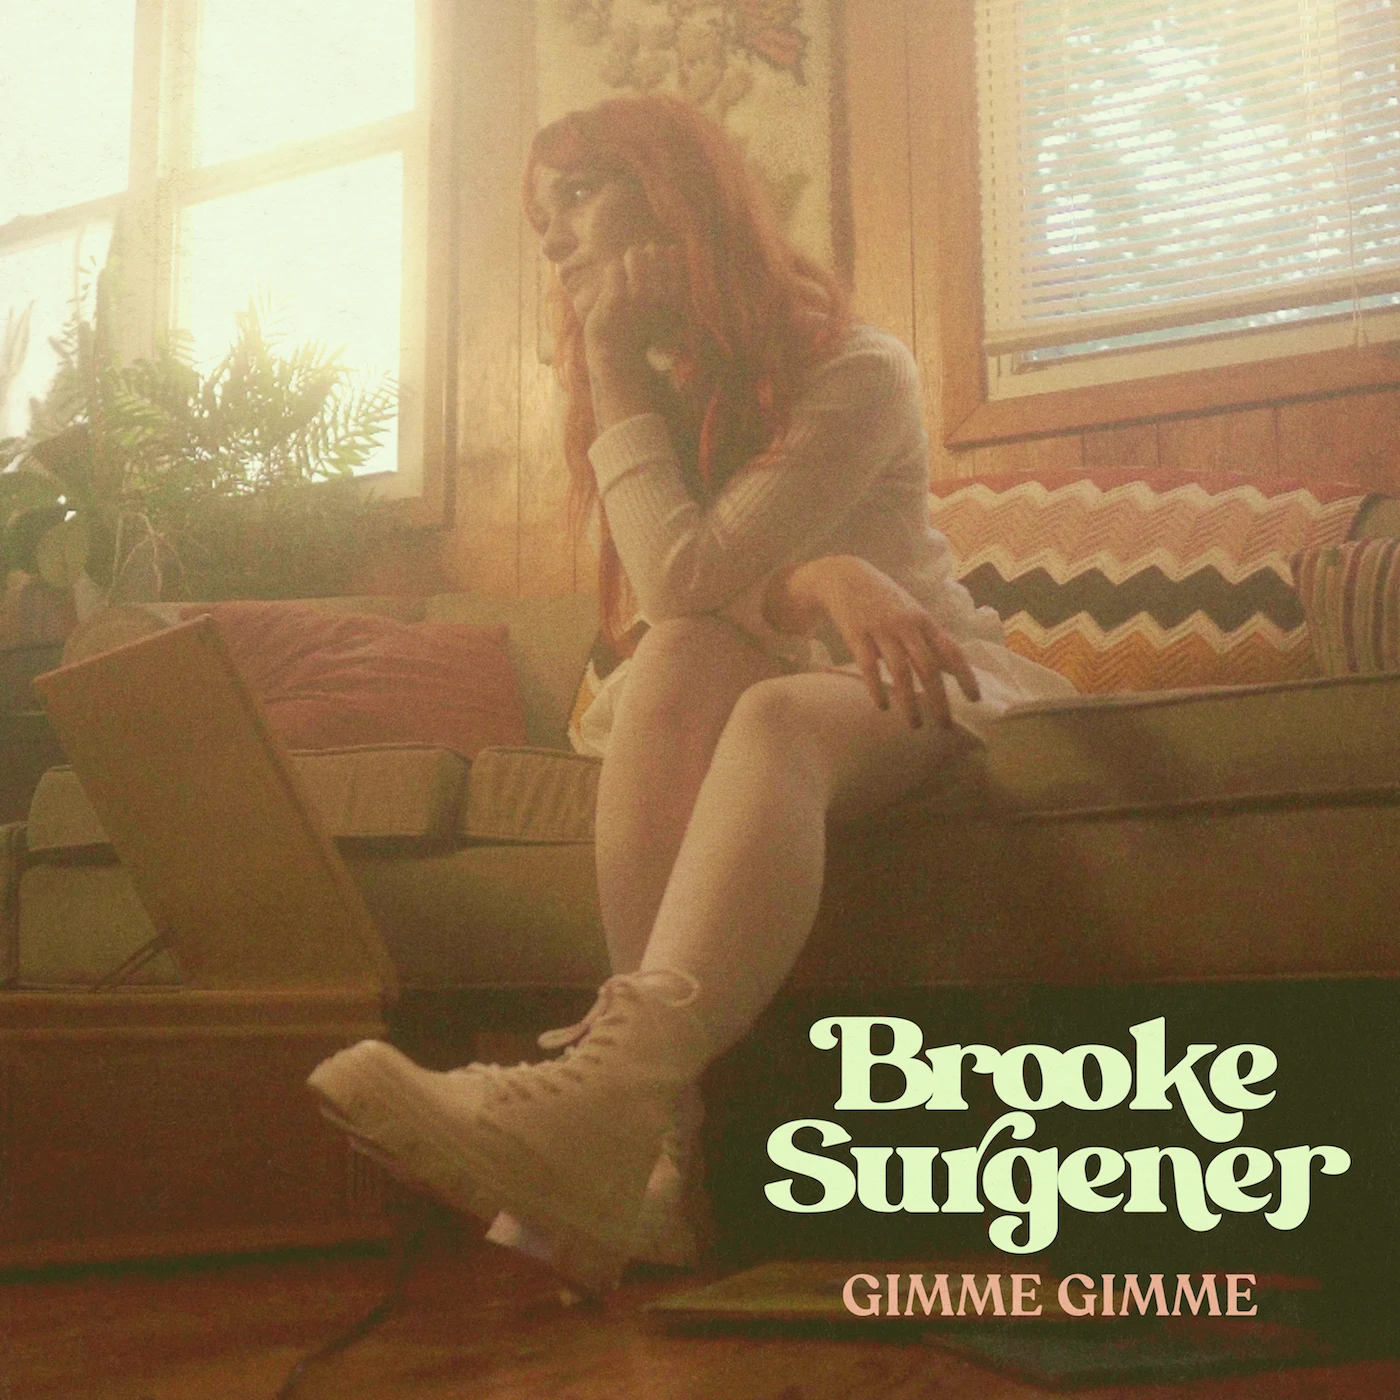 Brooke Surgener - 'Gimme Gimme'